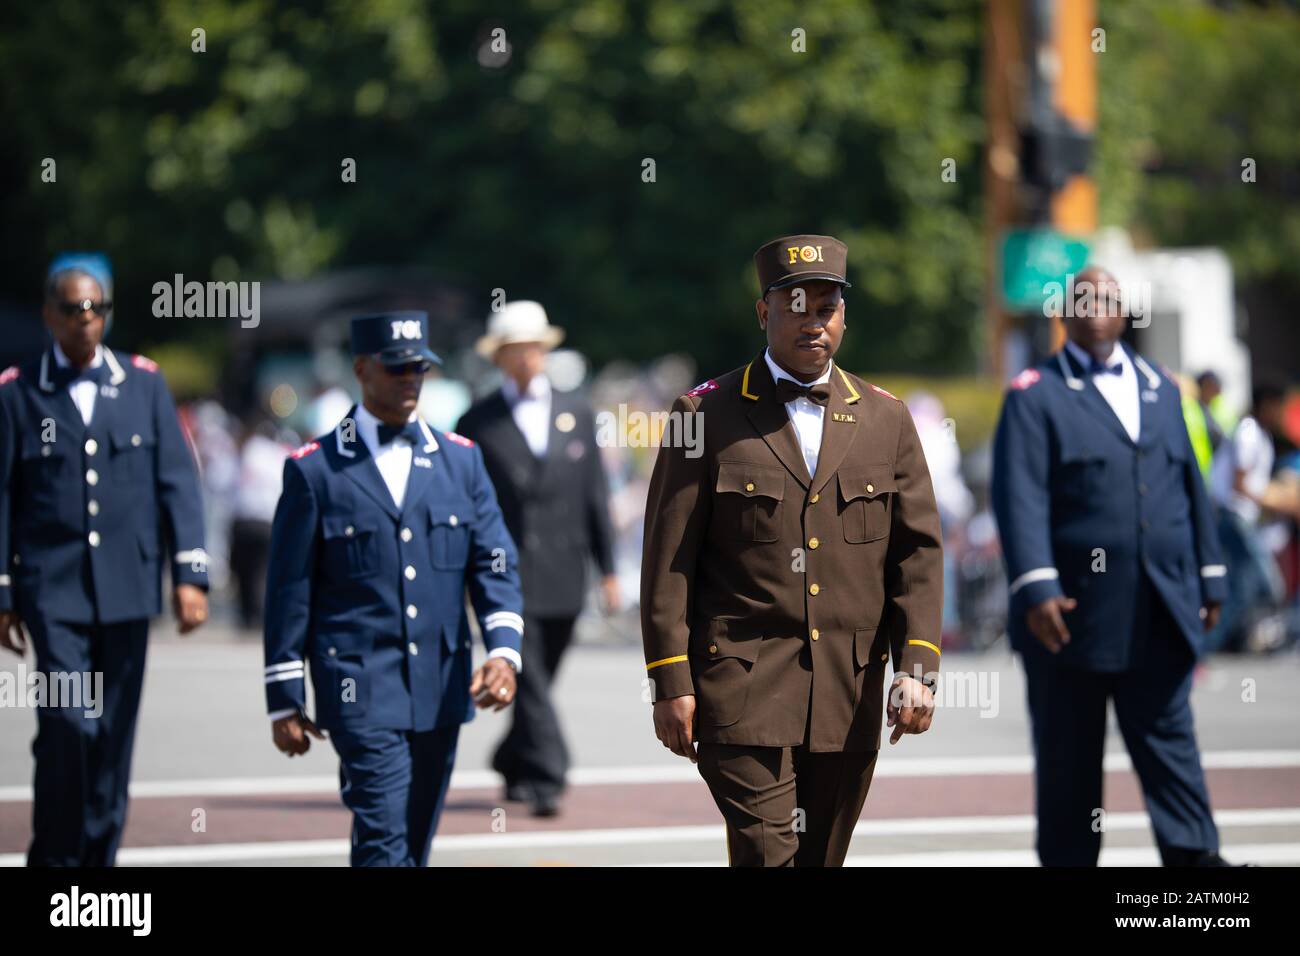 Chicago, Illinois, USA - 8. August 2019: Die Bud Billiken Parade, Mitglieder der Nation of Islam, die Uniformen trägt und die Straße an der PA hinuntermarschiert Stockfoto